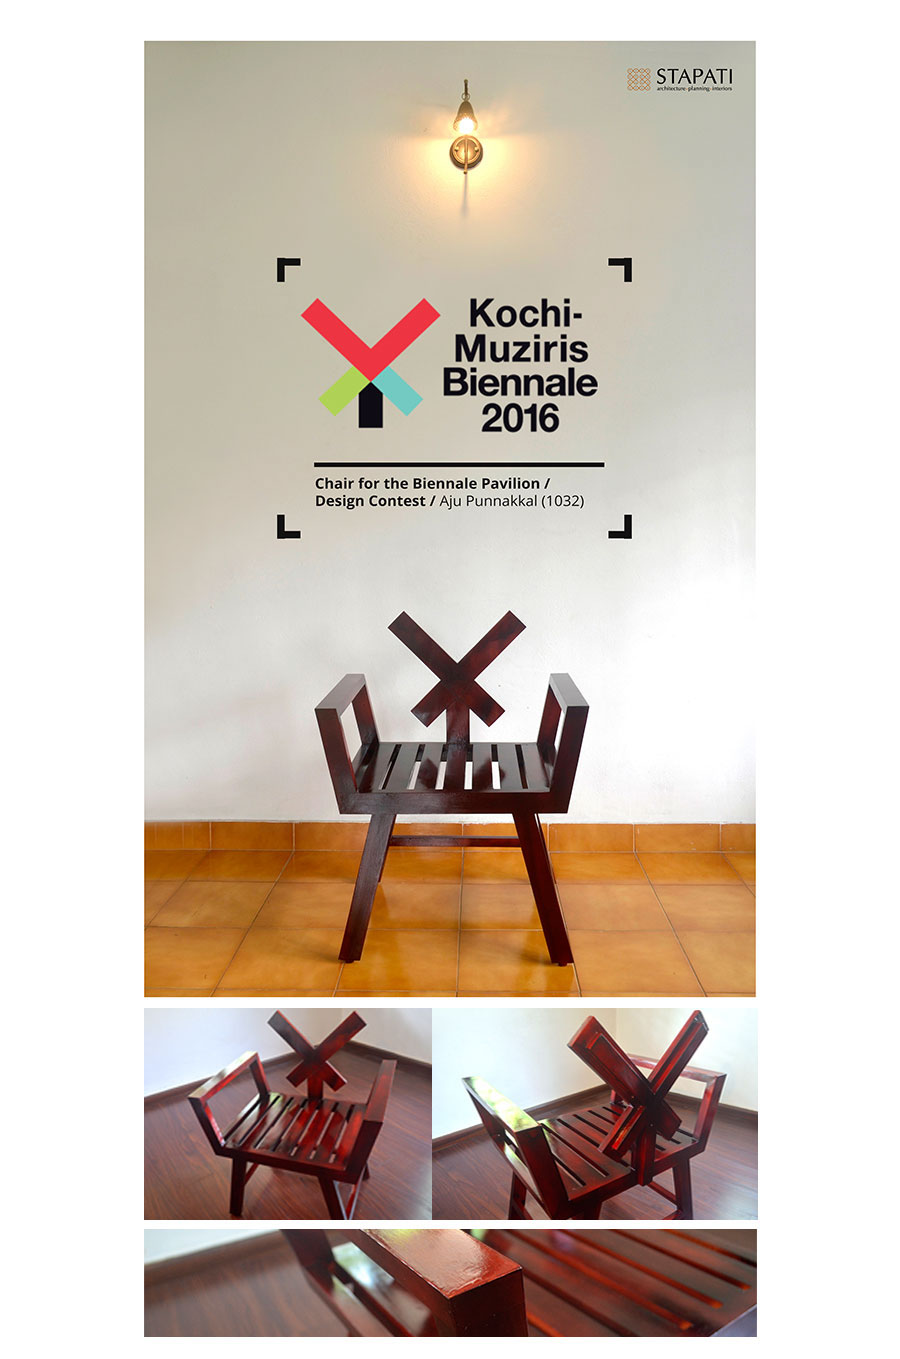 AjuPunnakkal Artmonk Biennale chair design Exhibition  furniture design  Kochi kochi muziris biennale muziris biennale product design 